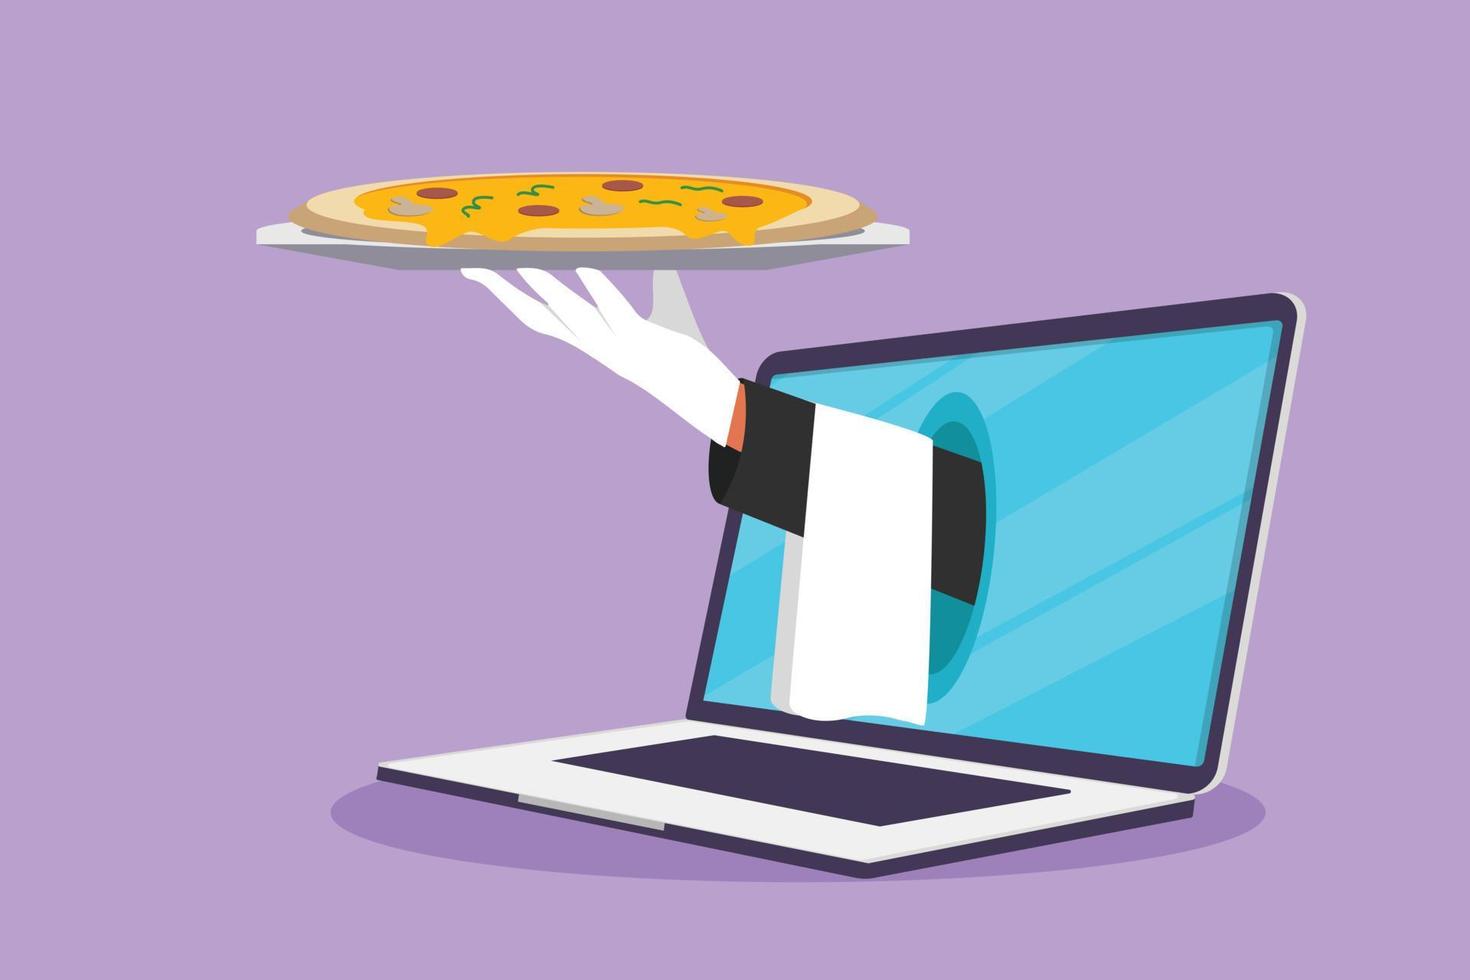 Charakter flache Zeichnung Hände aus Laptop-Computer-Bildschirm mit offenem Tablett, um köstliche italienische Pizza zu servieren. digitale App-Bestellung. online-lieferservice-konzept für lebensmittel. Cartoon-Design-Vektor-Illustration vektor